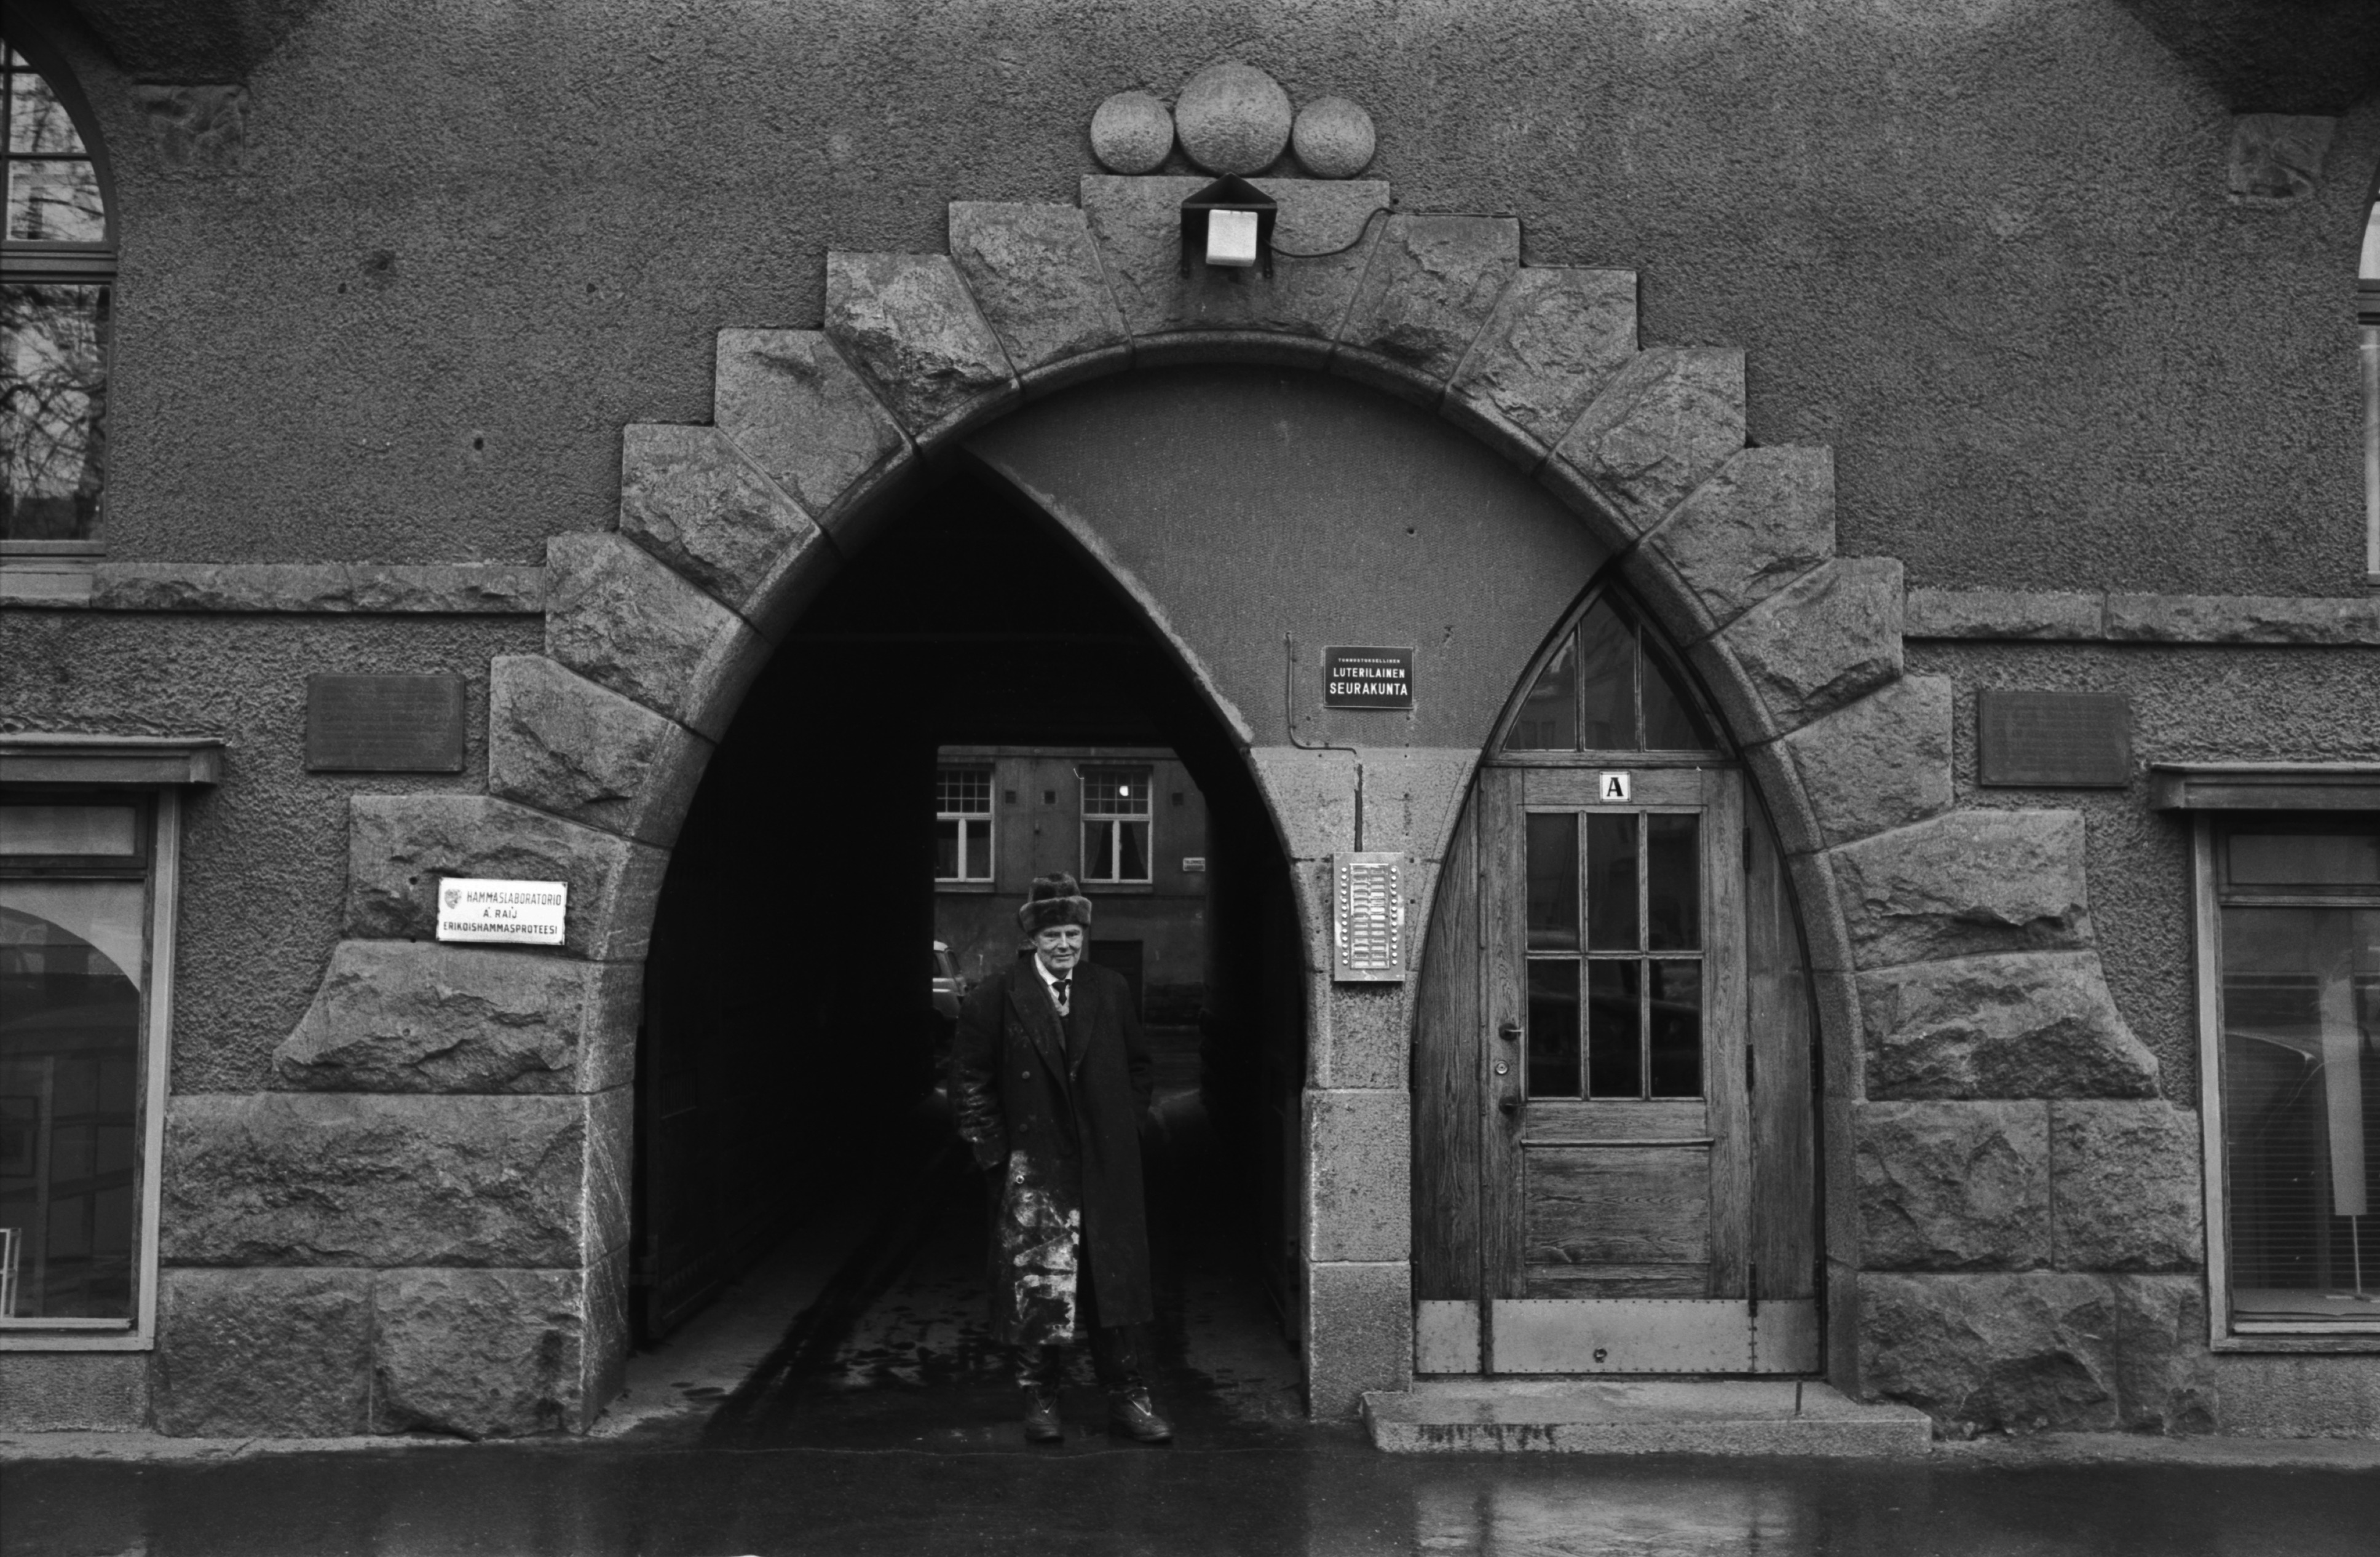 Fabianinkatu 13. Mies, jonka ulsterissa valkoista maalia(?) seisomassa sateisella Fabianinkadulla jugendtalo Torilinnan porttikäytävän edustalla Kasarmitorin laidalla.